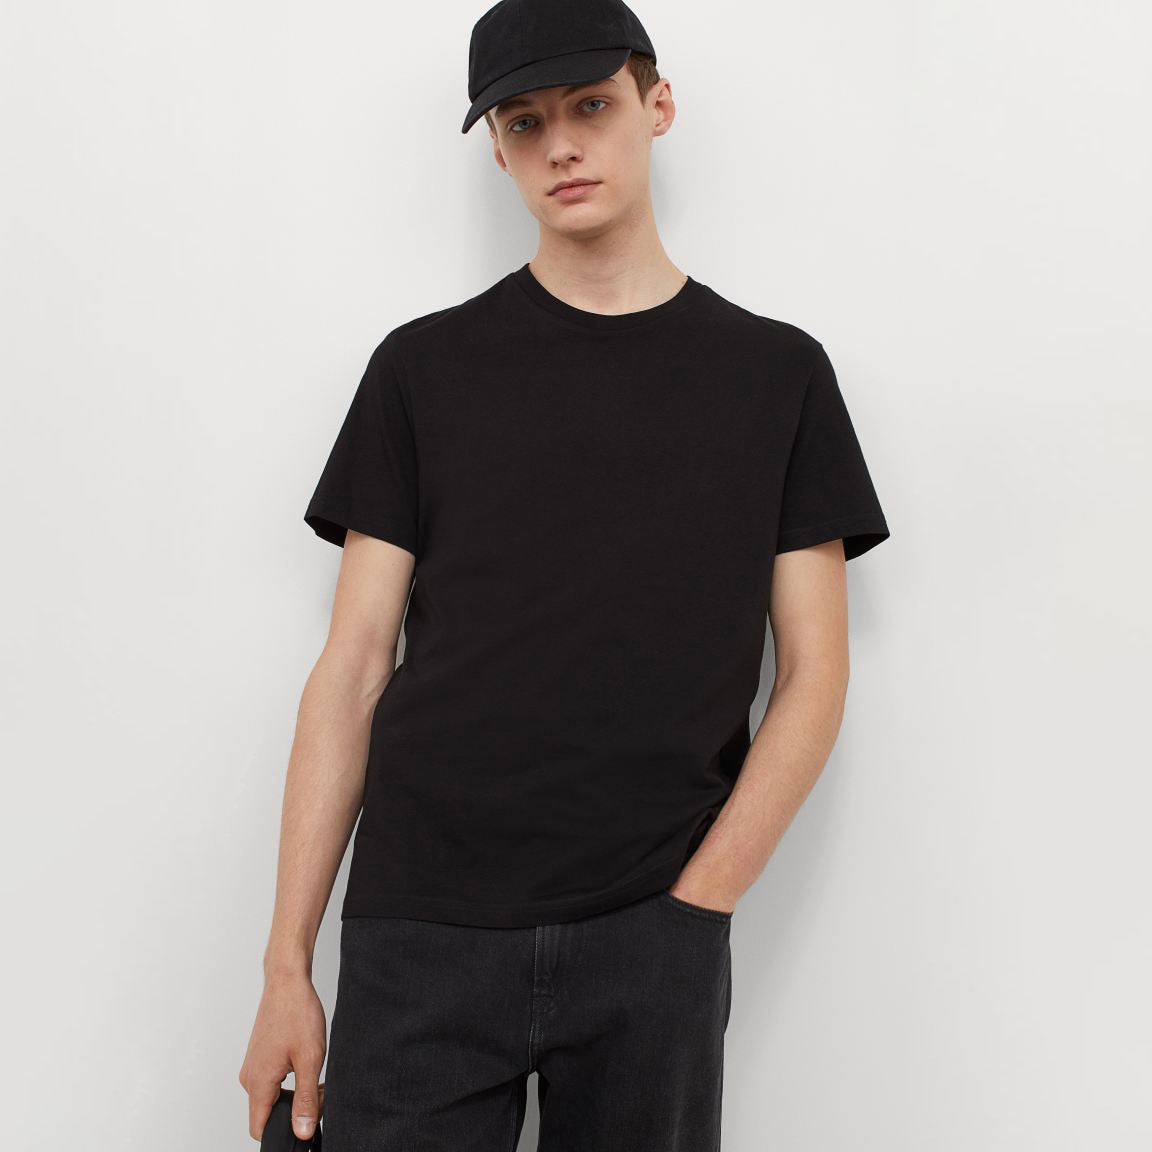 Men's Plain Black T-Shirt